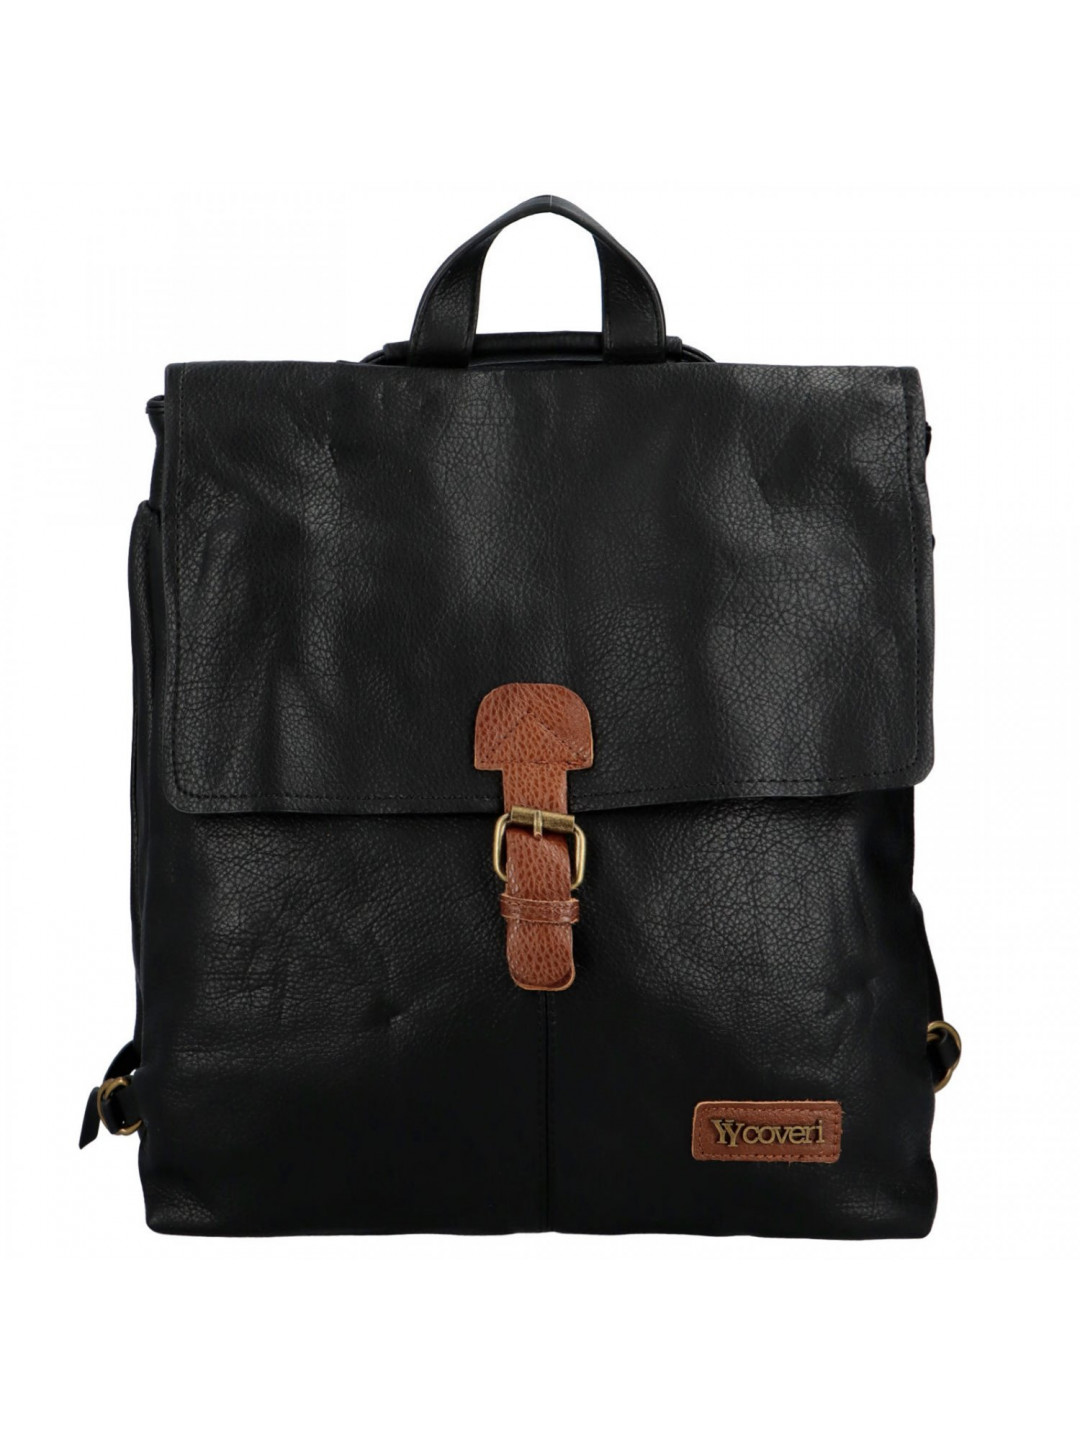 Jednoduchý dámský koženkový batoh Eduarde černá